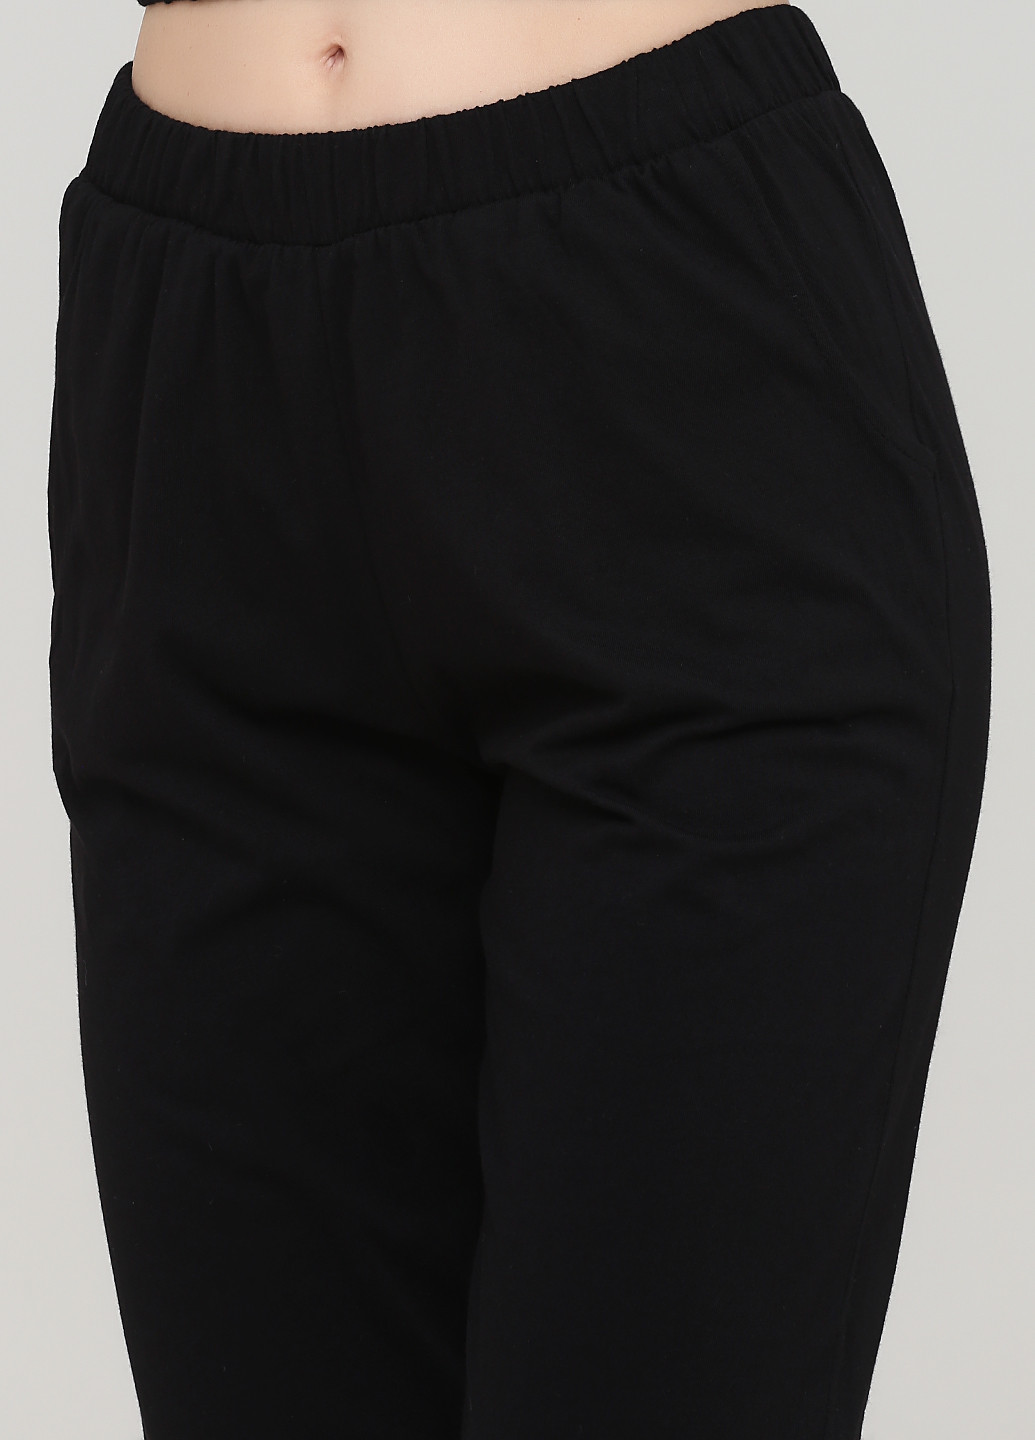 Черная всесезон пижама (топ, брюки) топ + брюки Mirano